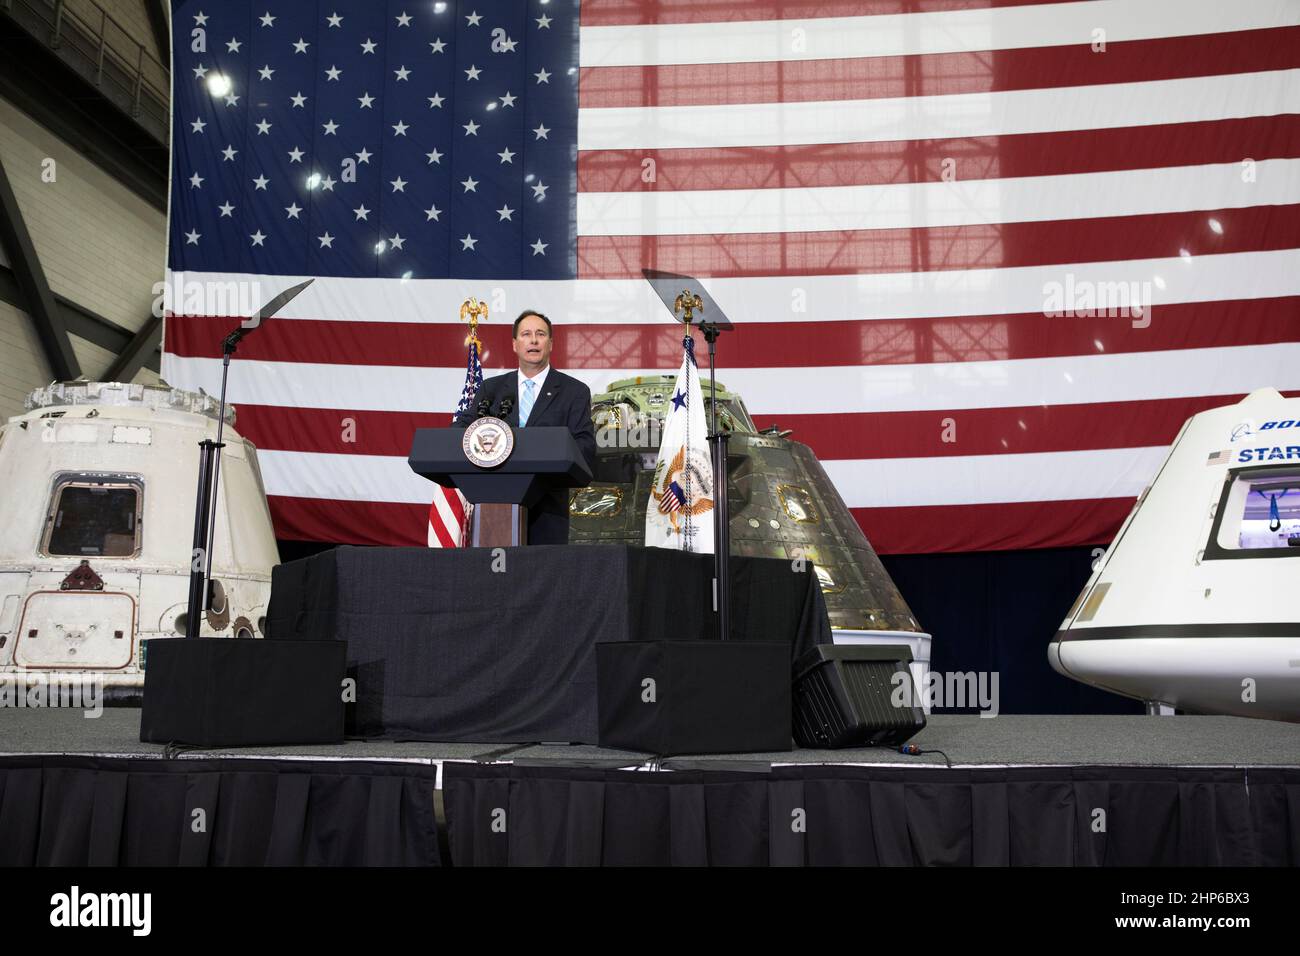 Deliberando amministratore della NASA Robert Lightfoot indirizzi leader dell'agenzia, gli Stati Uniti e il governo della Florida i funzionari e i dipendenti all'interno del complessivo del veicolo la costruzione presso NASA Kennedy Space Center in Florida durante una visita del Vice Presidente Mike Pence. Pence ha ringraziato i dipendenti per far avanzare la leadership americana nello spazio. A ridosso del podio sono, da sinistra, un volato SpaceX Dragon capsula, il veicolo spaziale Orion volato su Esplorazione prova di volo-1 nel 2014, e un mockup del Boeing CST-100 Starliner. Durante la sua visita a Kennedy, il Vice Presidente ha anche visitato diverse strutture evidenziando il pubblico-spiagg Foto Stock